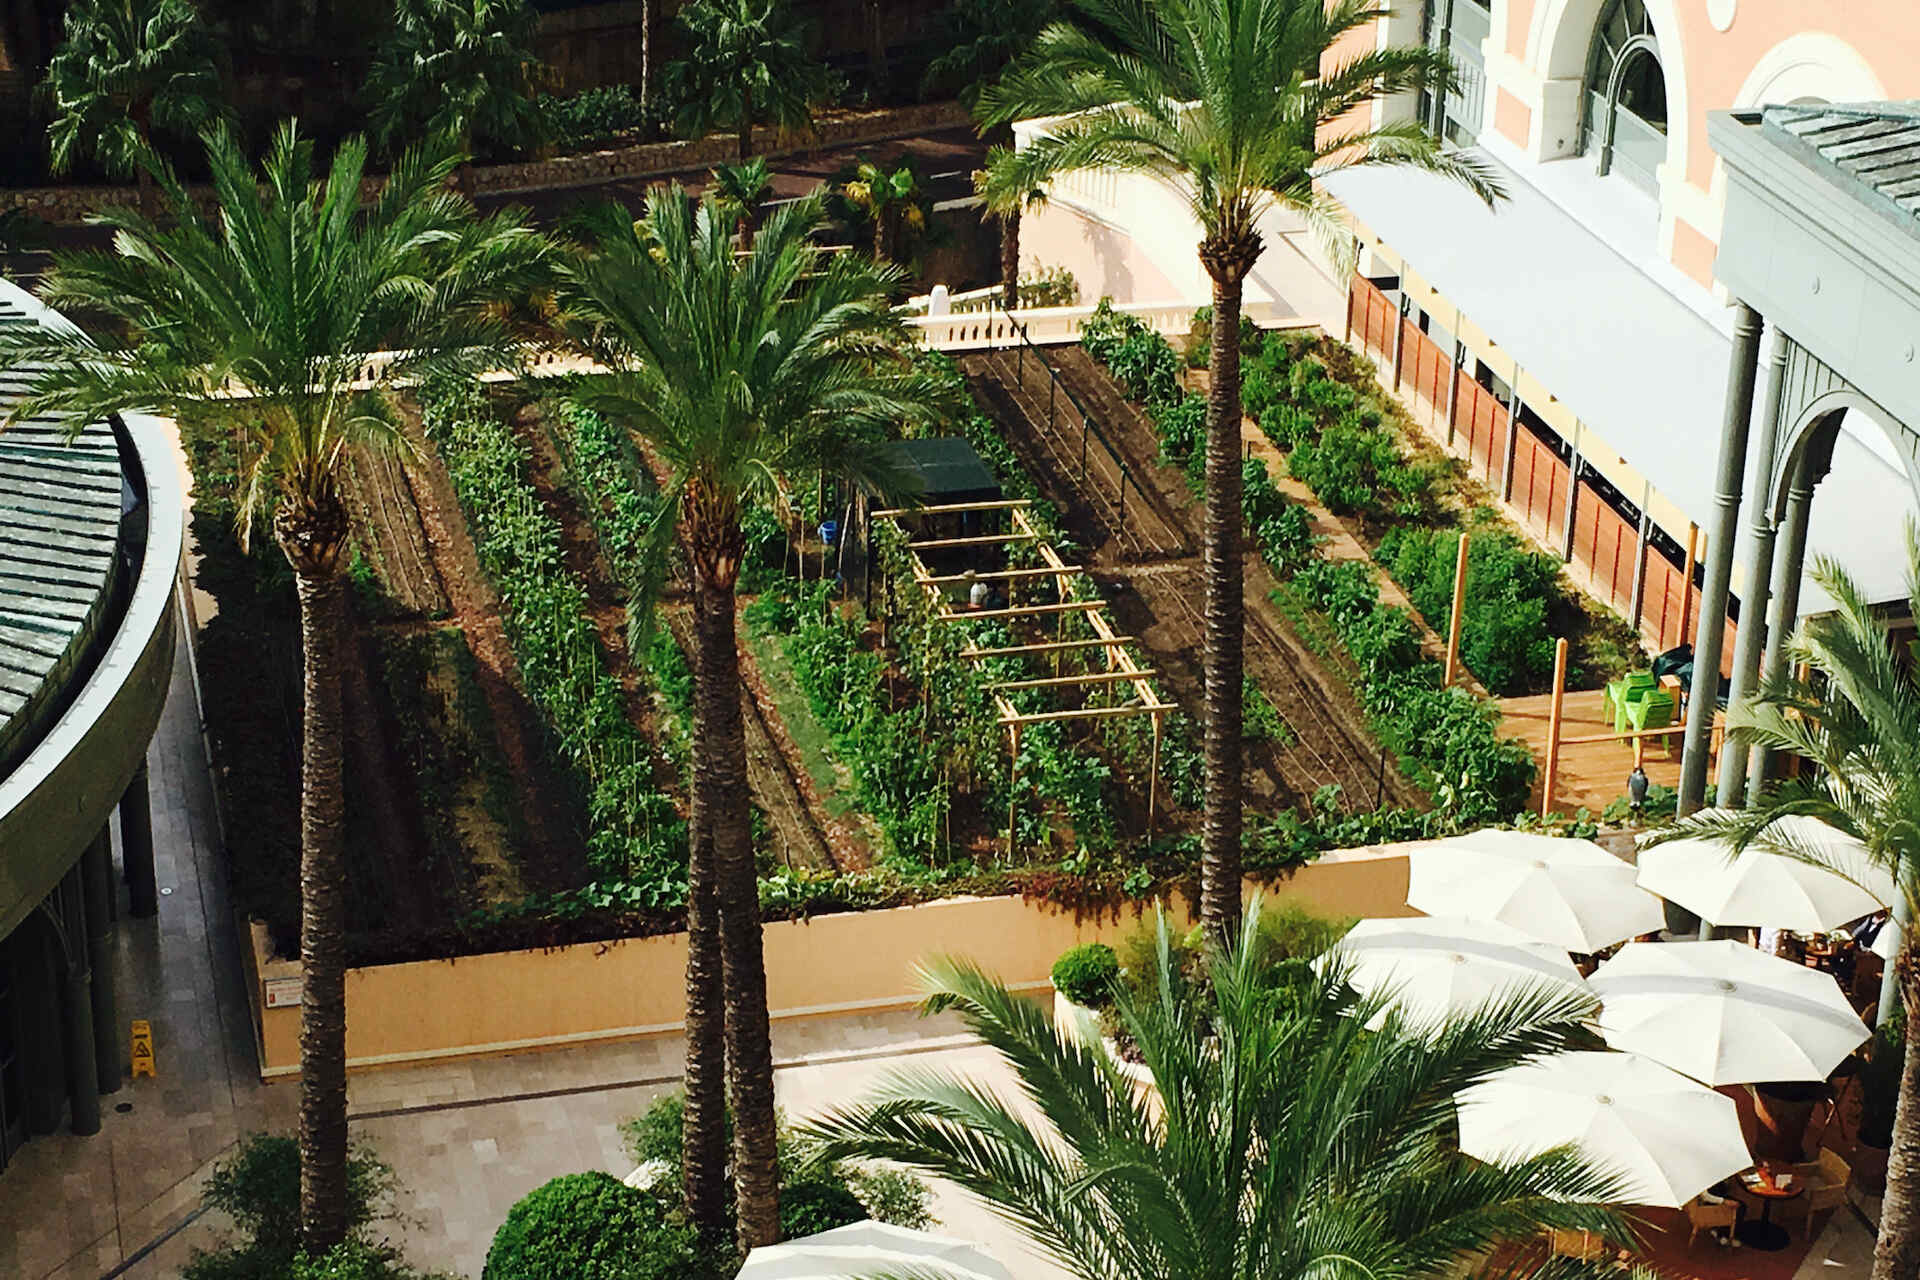 Société des Bains de Mer преследует «зеленые» цели с огородами с нулевым километром в Монте-Карло.